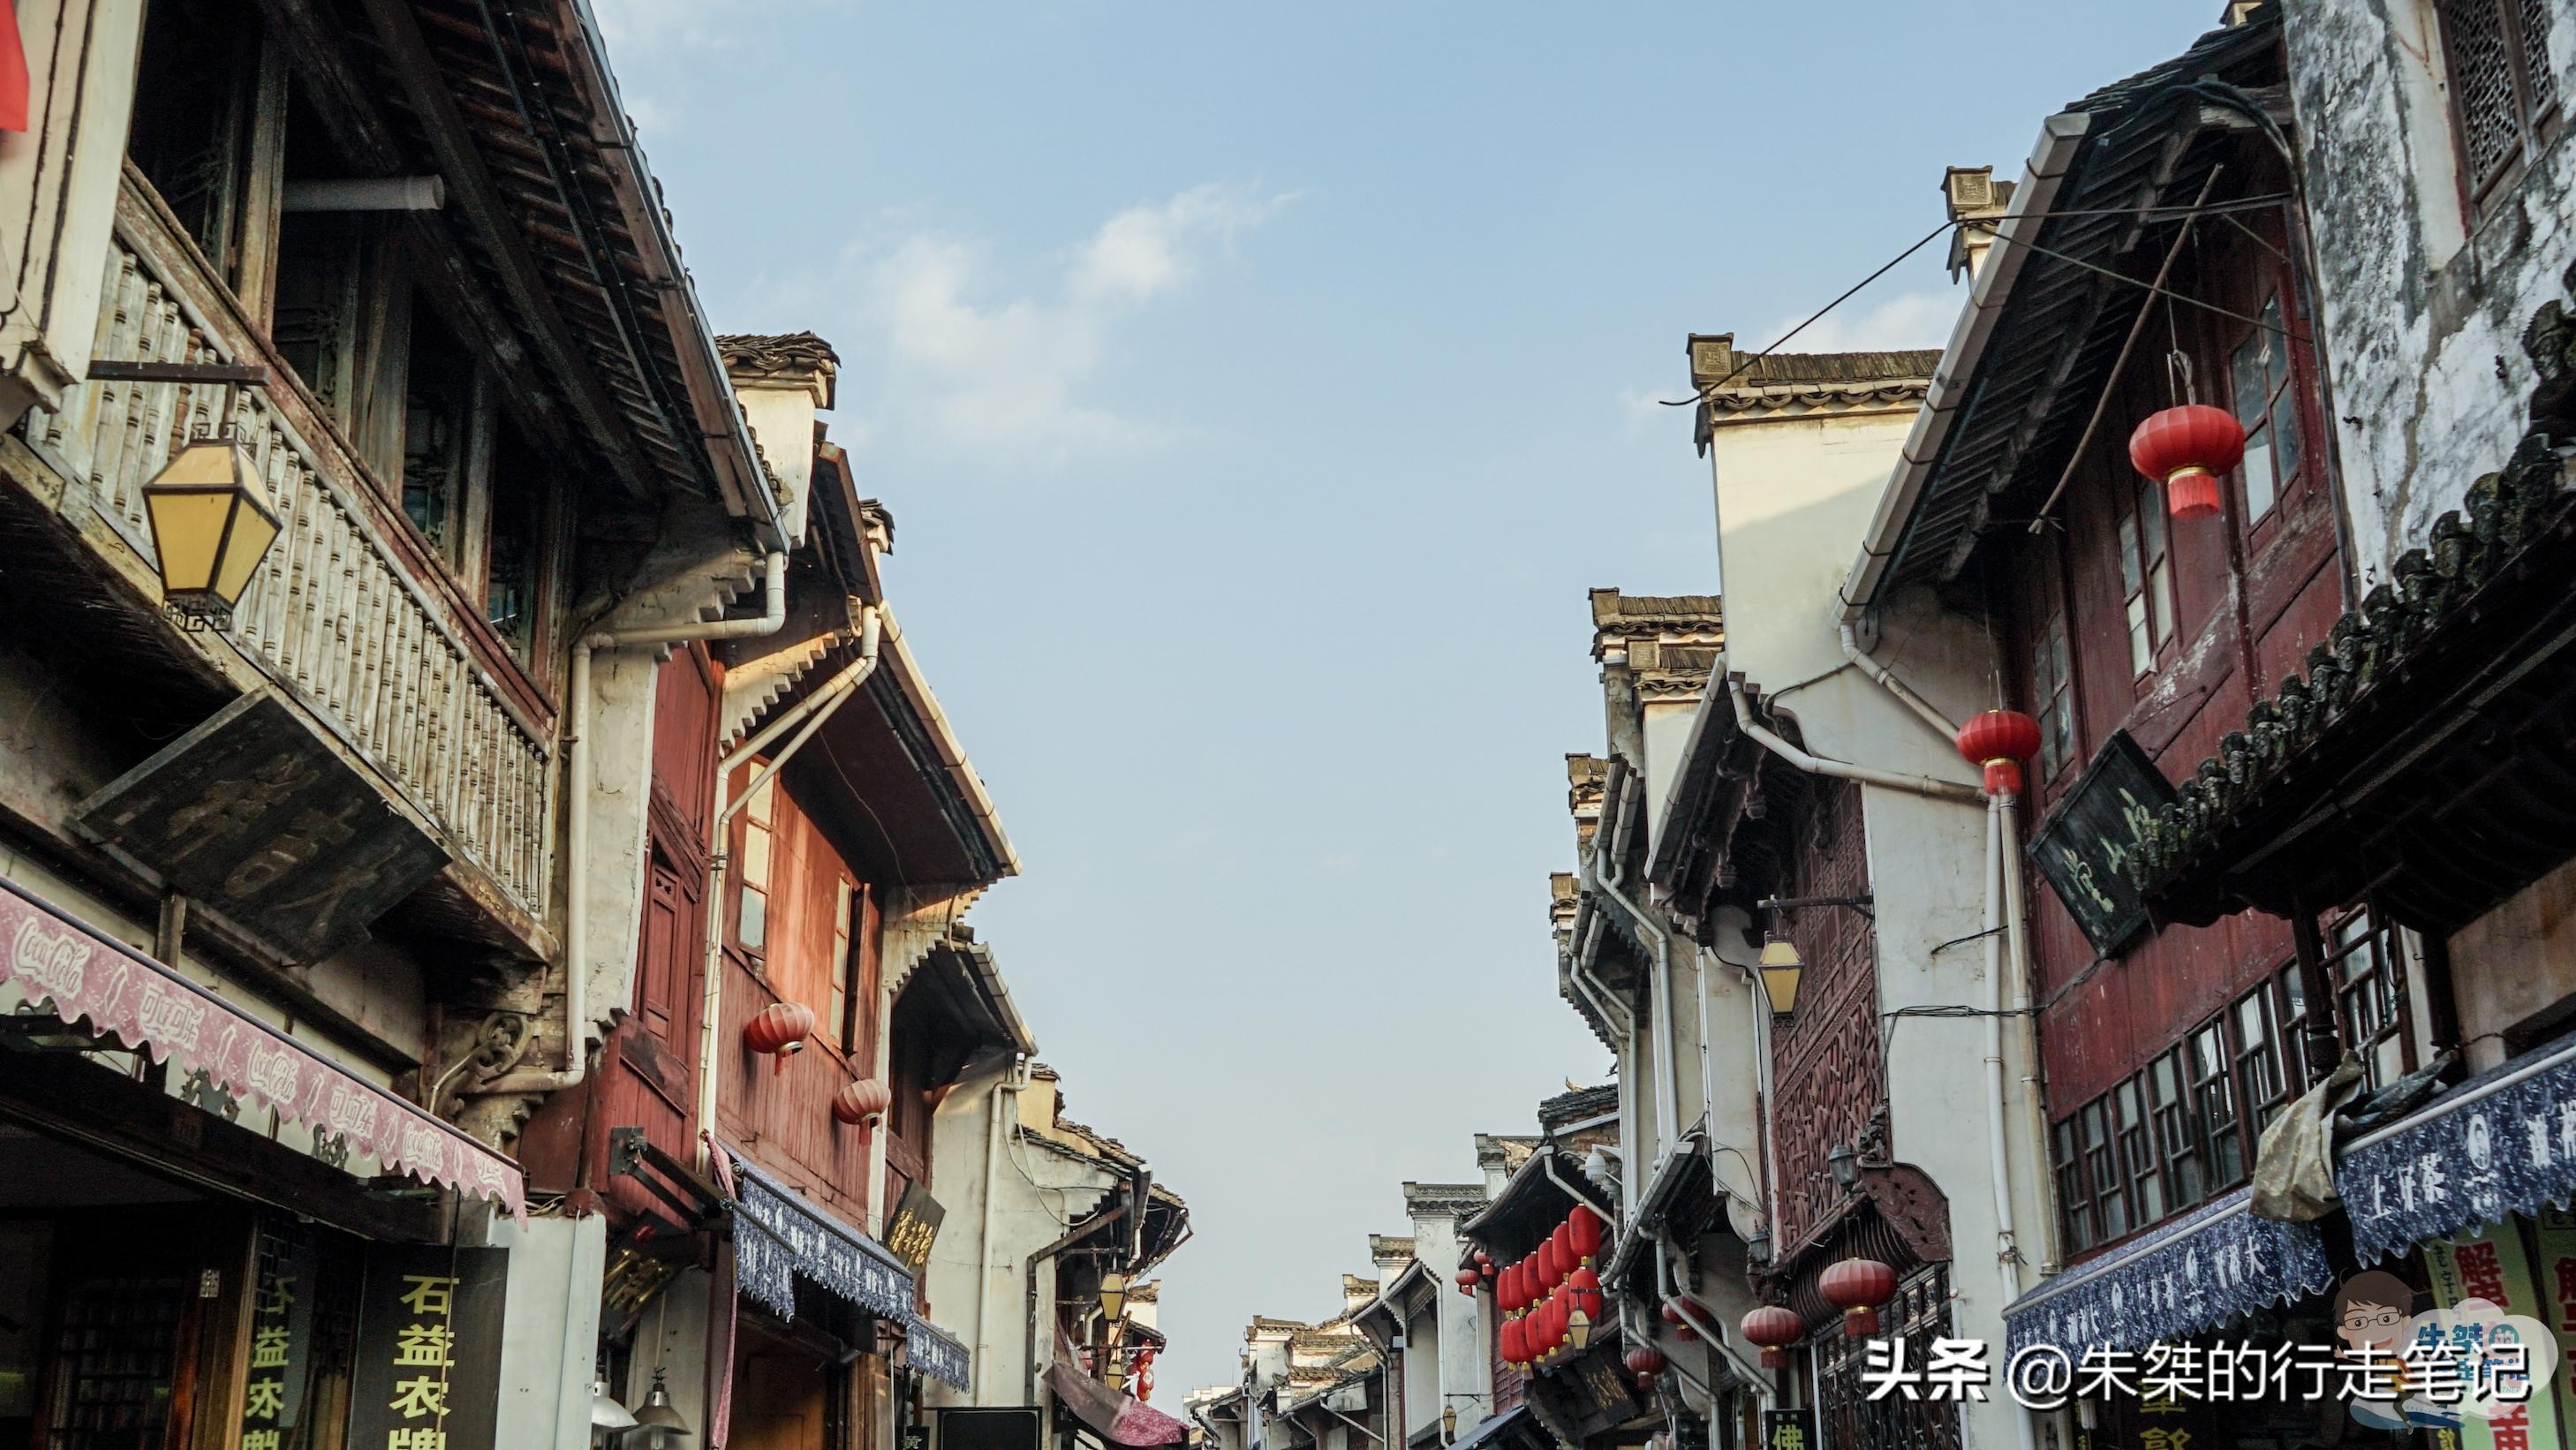 李荣浩 老街(李荣浩《老街》原型 有600多年历史 被誉为流动的“清明上河图”)